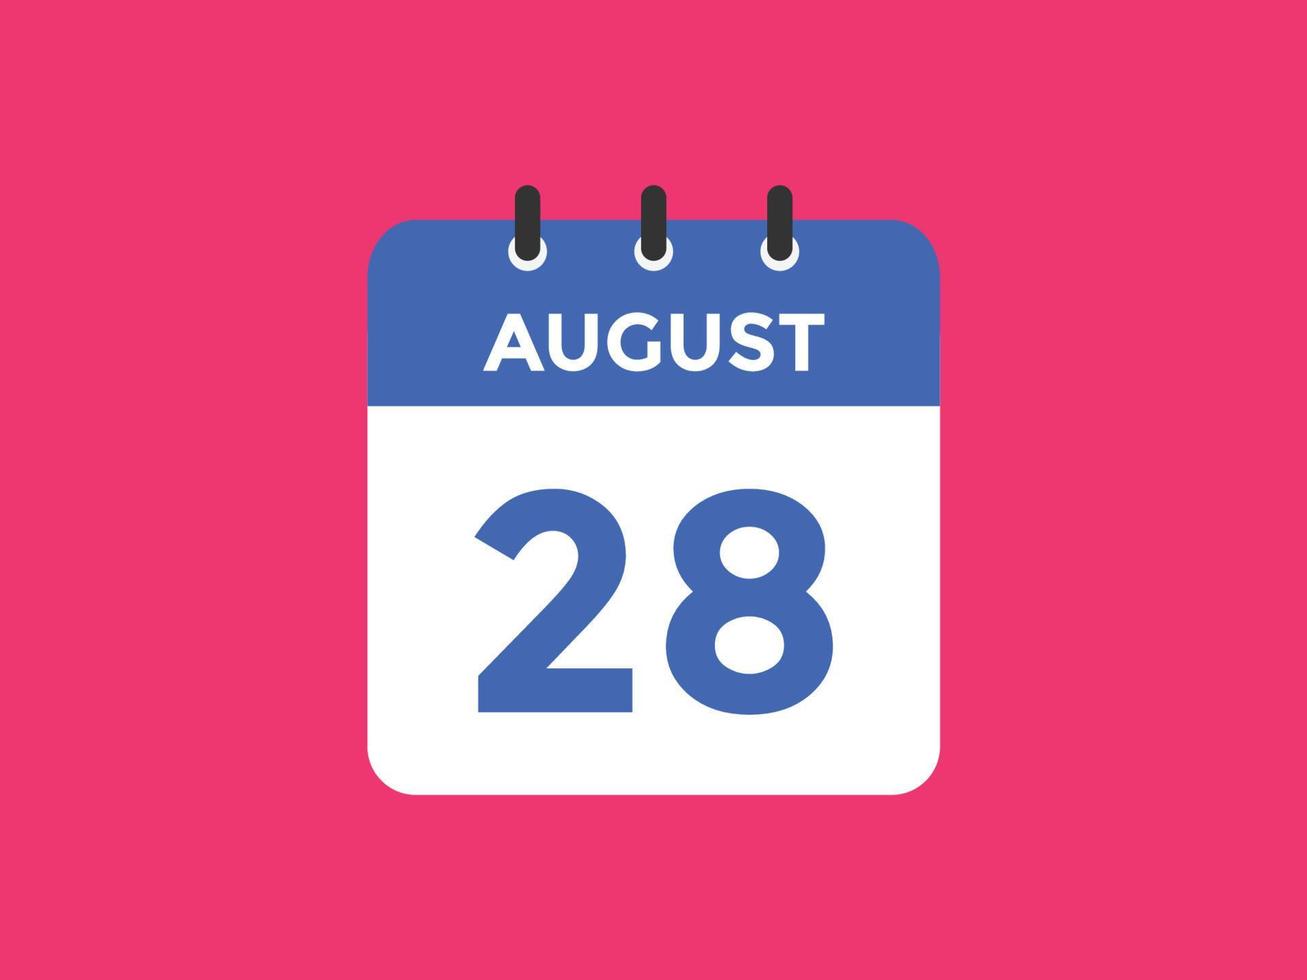 agosto 28 calendario promemoria. 28th agosto quotidiano calendario icona modello. calendario 28th agosto icona design modello. vettore illustrazione